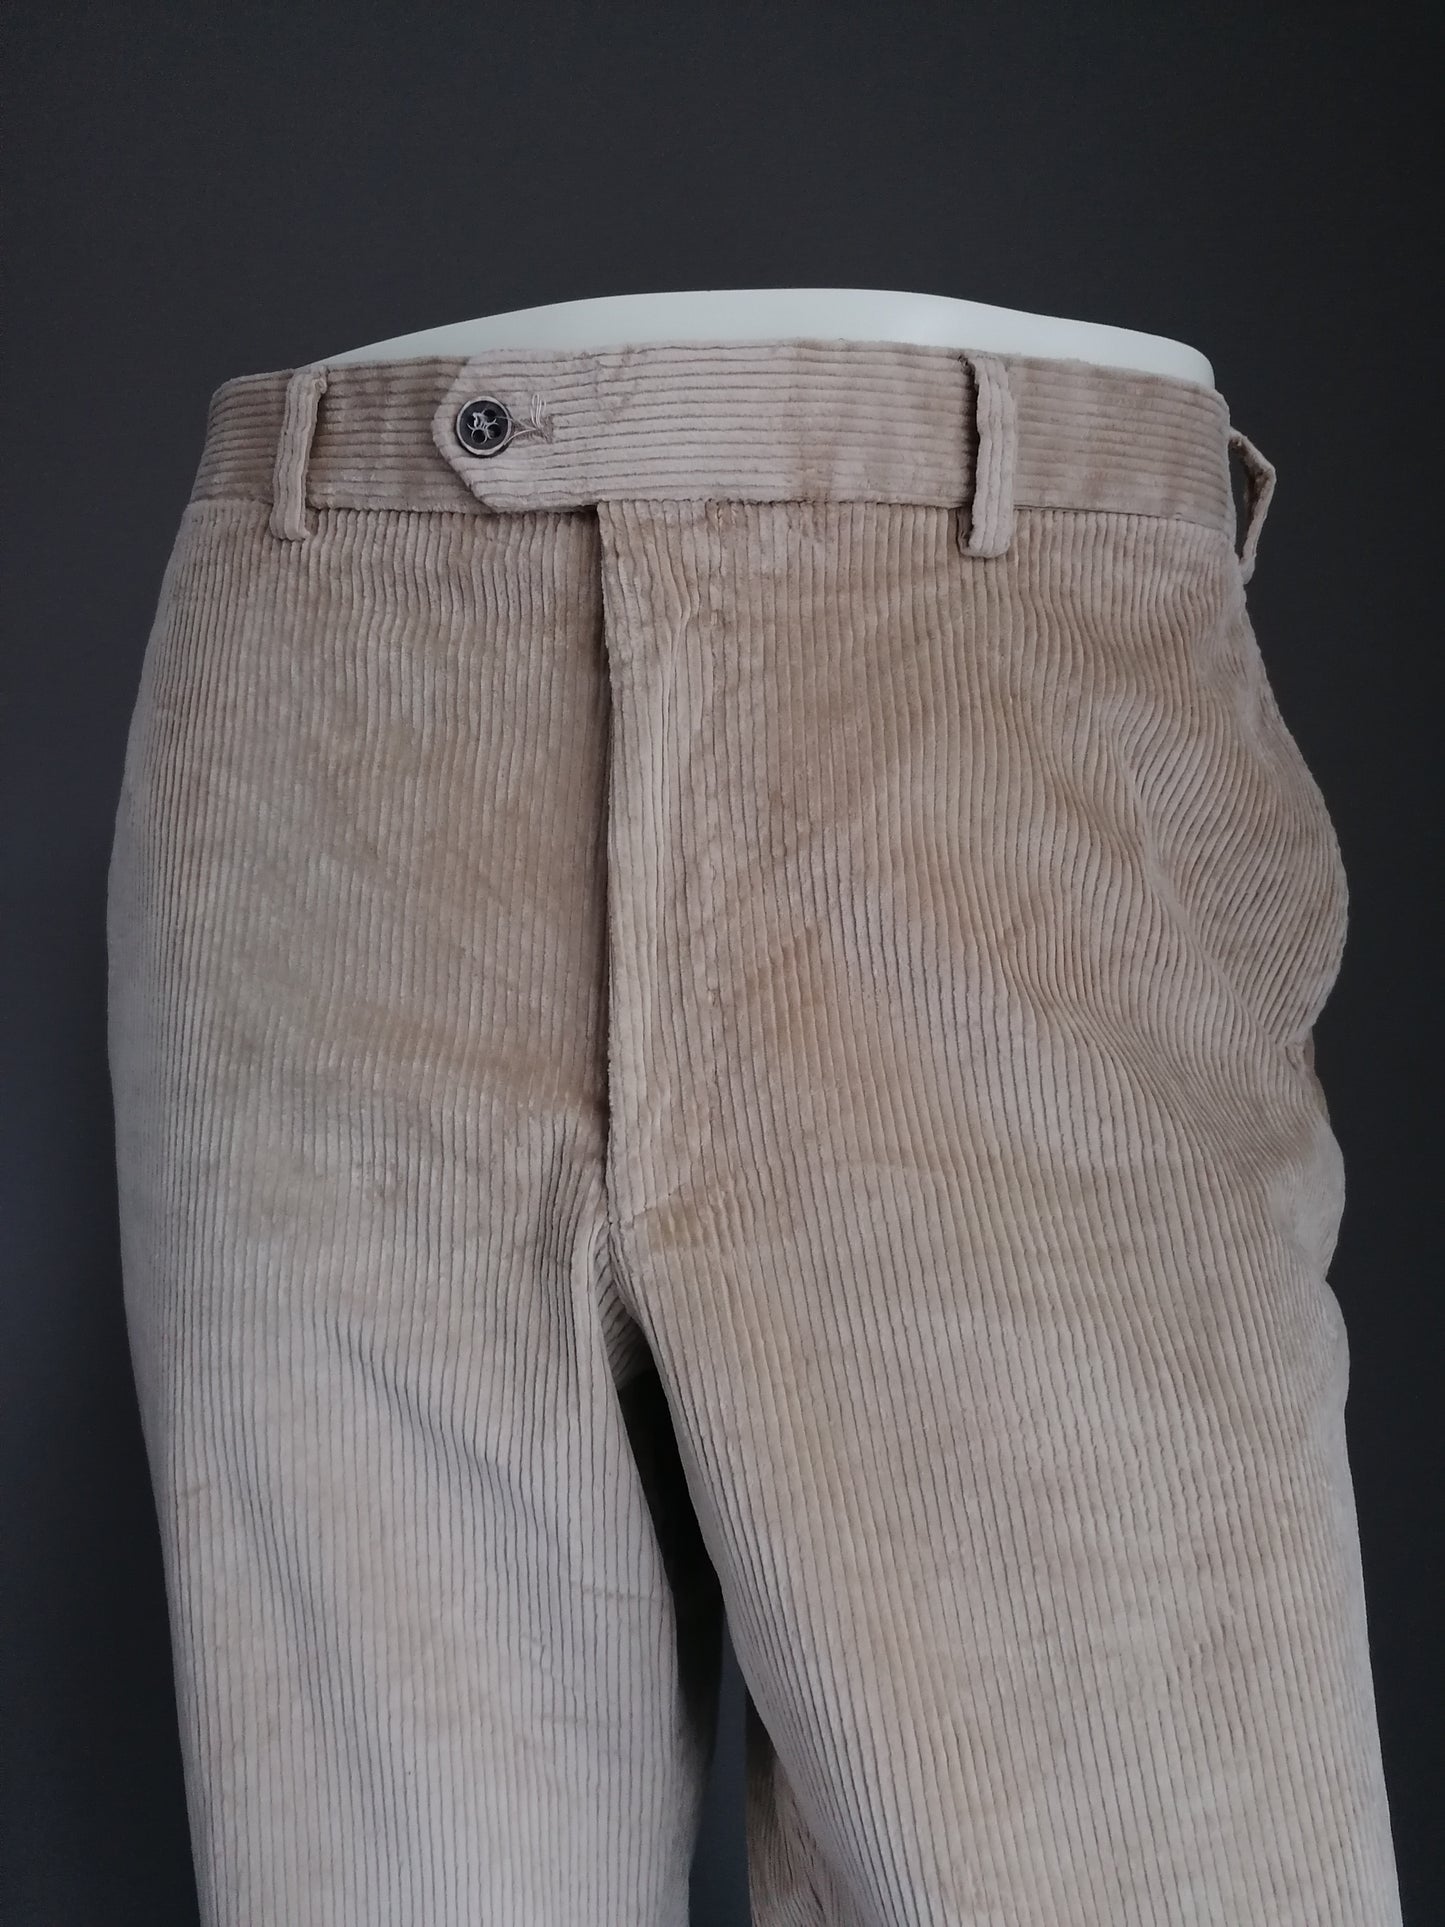 Pantalones / pantalones de la costilla de Hiltl. Color marrón claro. Tamaño 54 / l